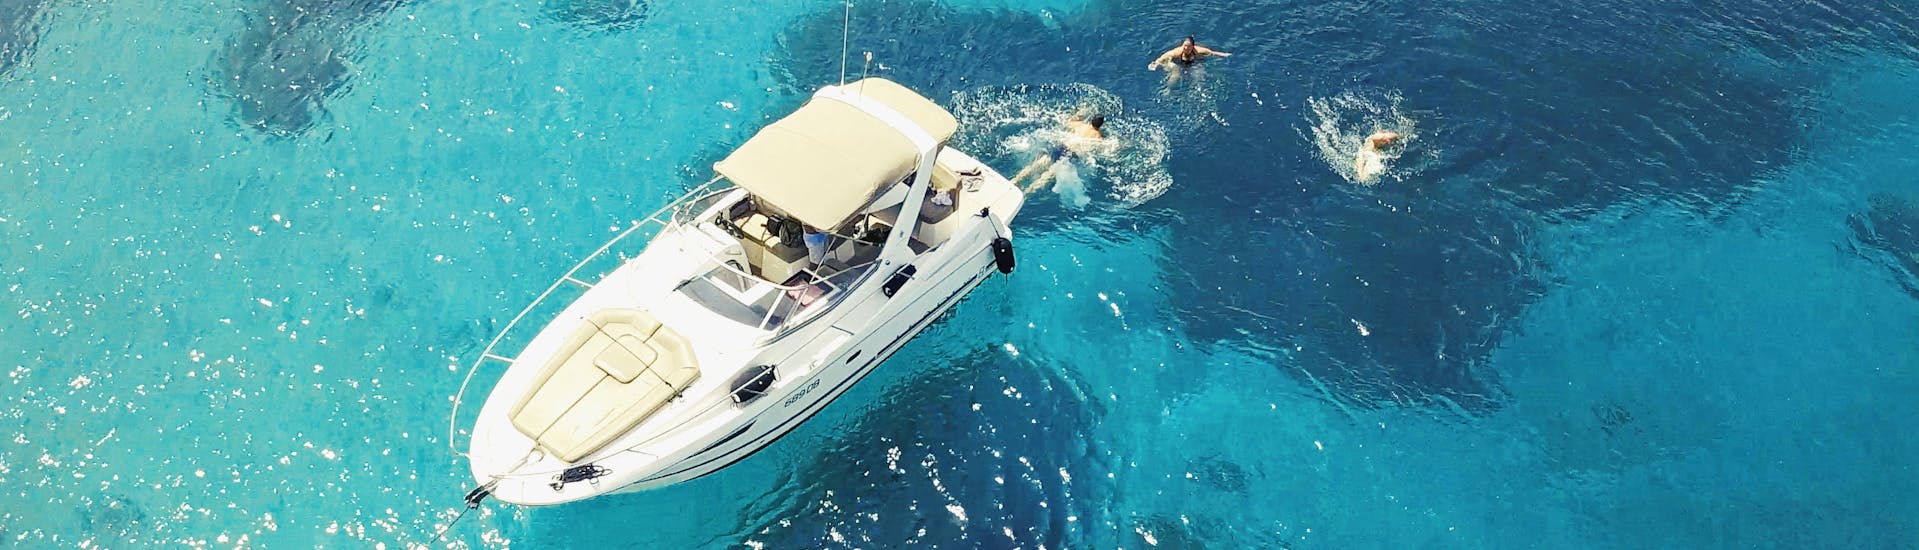 Barca nelle acque limpide durante la gita privata di mezza giornata con una barca a motore di lusso alle isole Elafiti da Dubrovnik organizzata da Snooky Tours Dubrovnik.